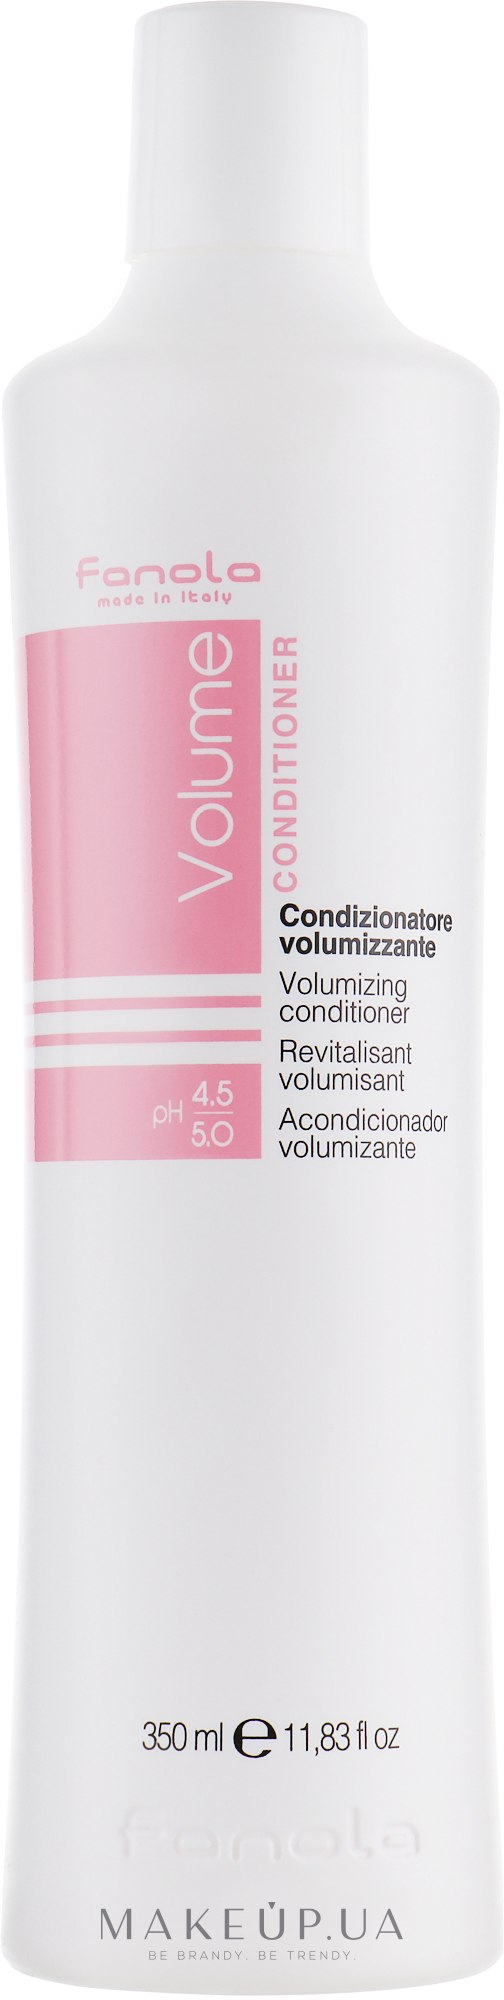 Кондиционер для тонких волос - Fanola Volumizing Conditioner — фото 350ml